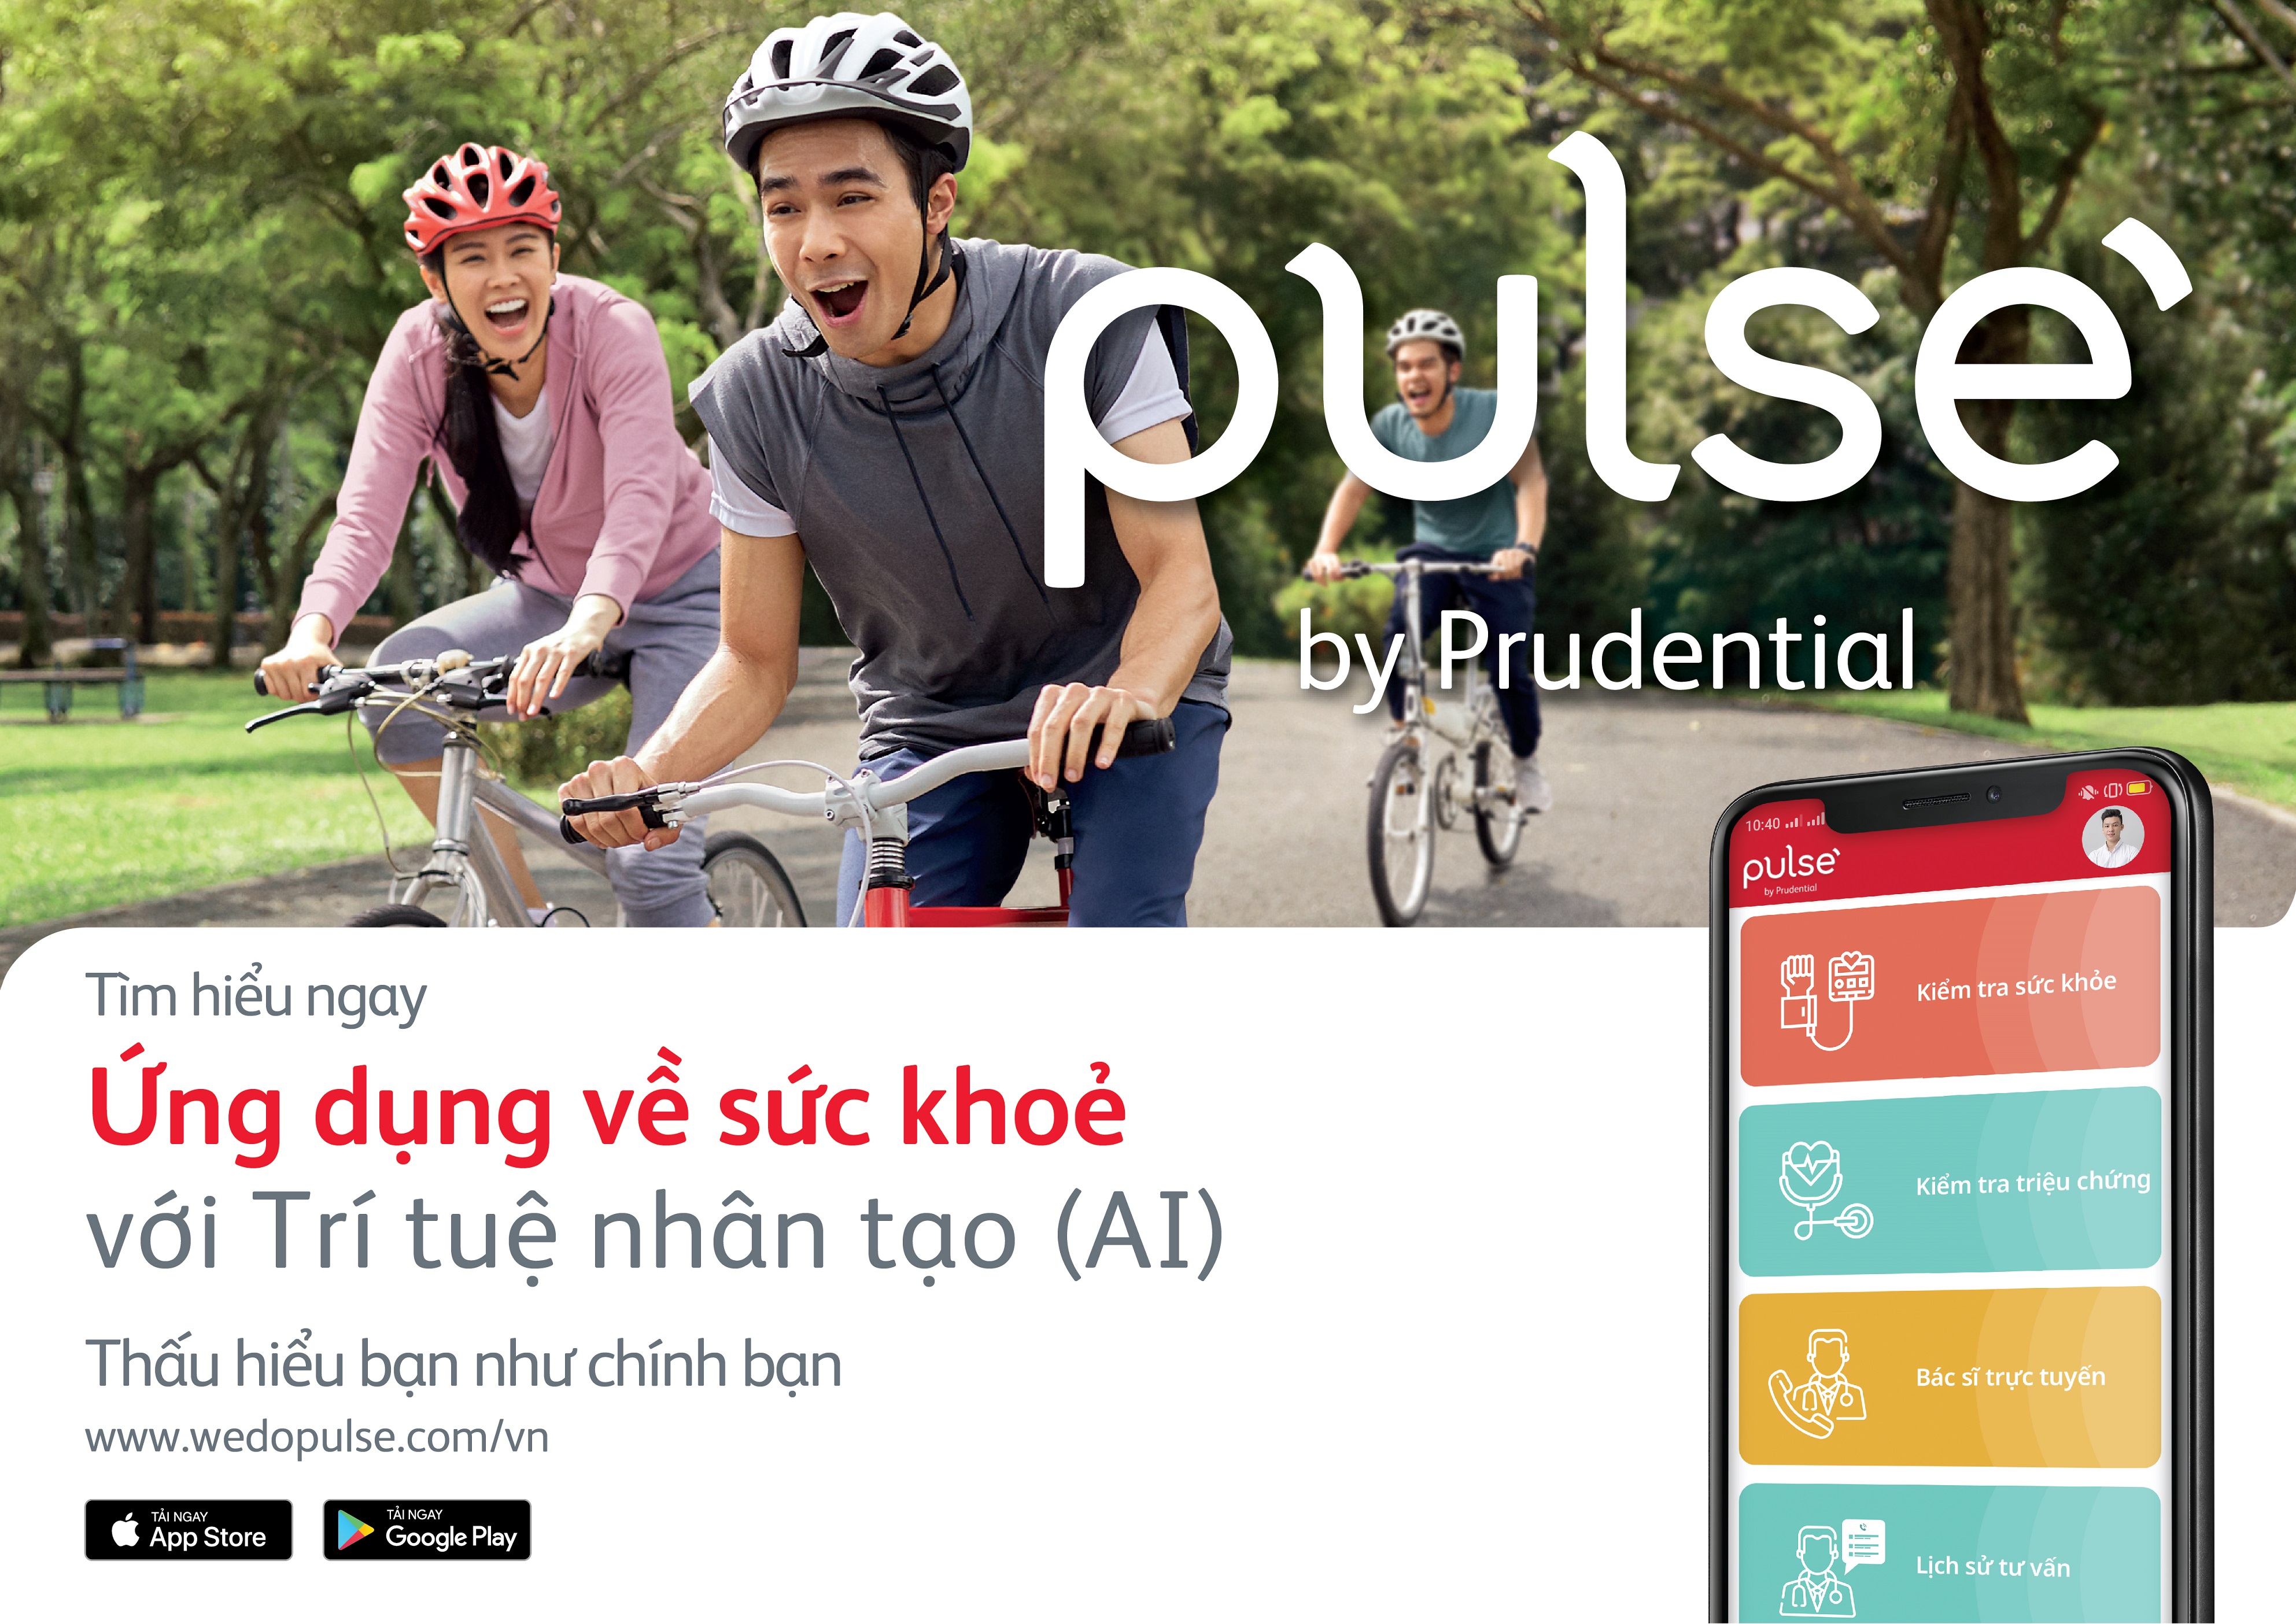 Prudential Việt Nam - Tiên phong trong ứng dụng công nghệ tiên tiến